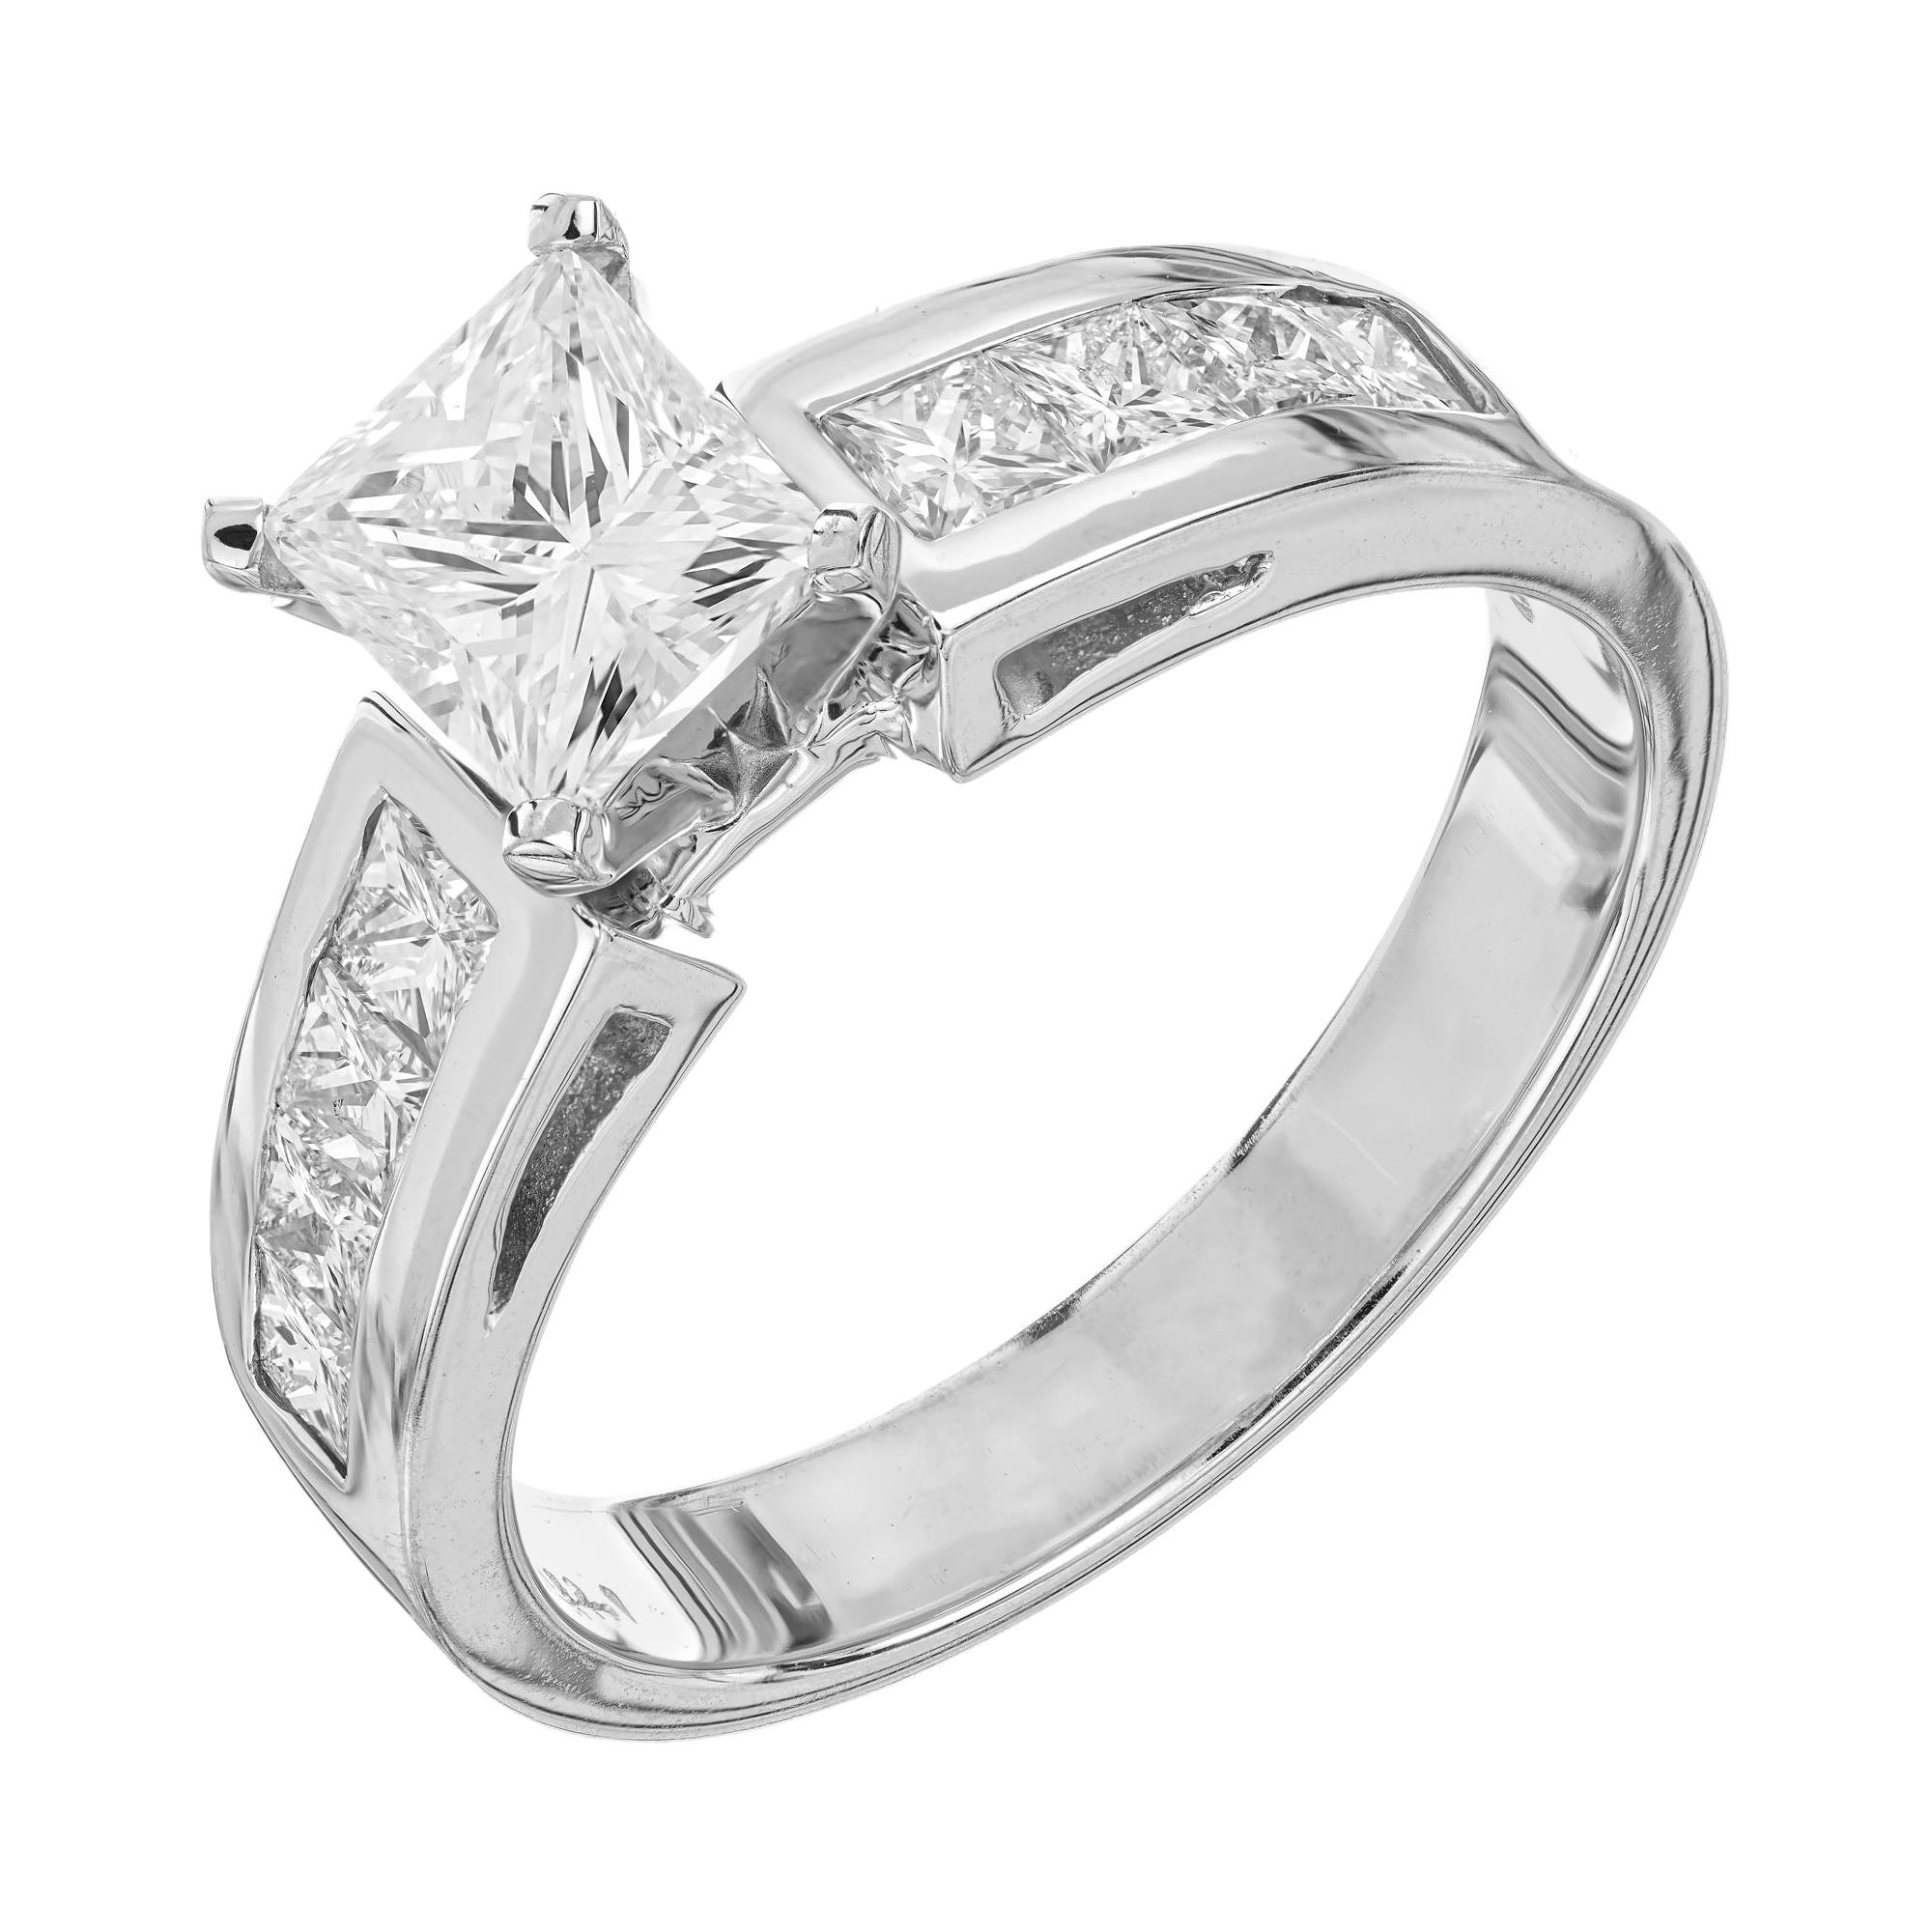 GIA Certified 1.28 Carat Diamond White Gold Engagement Ring